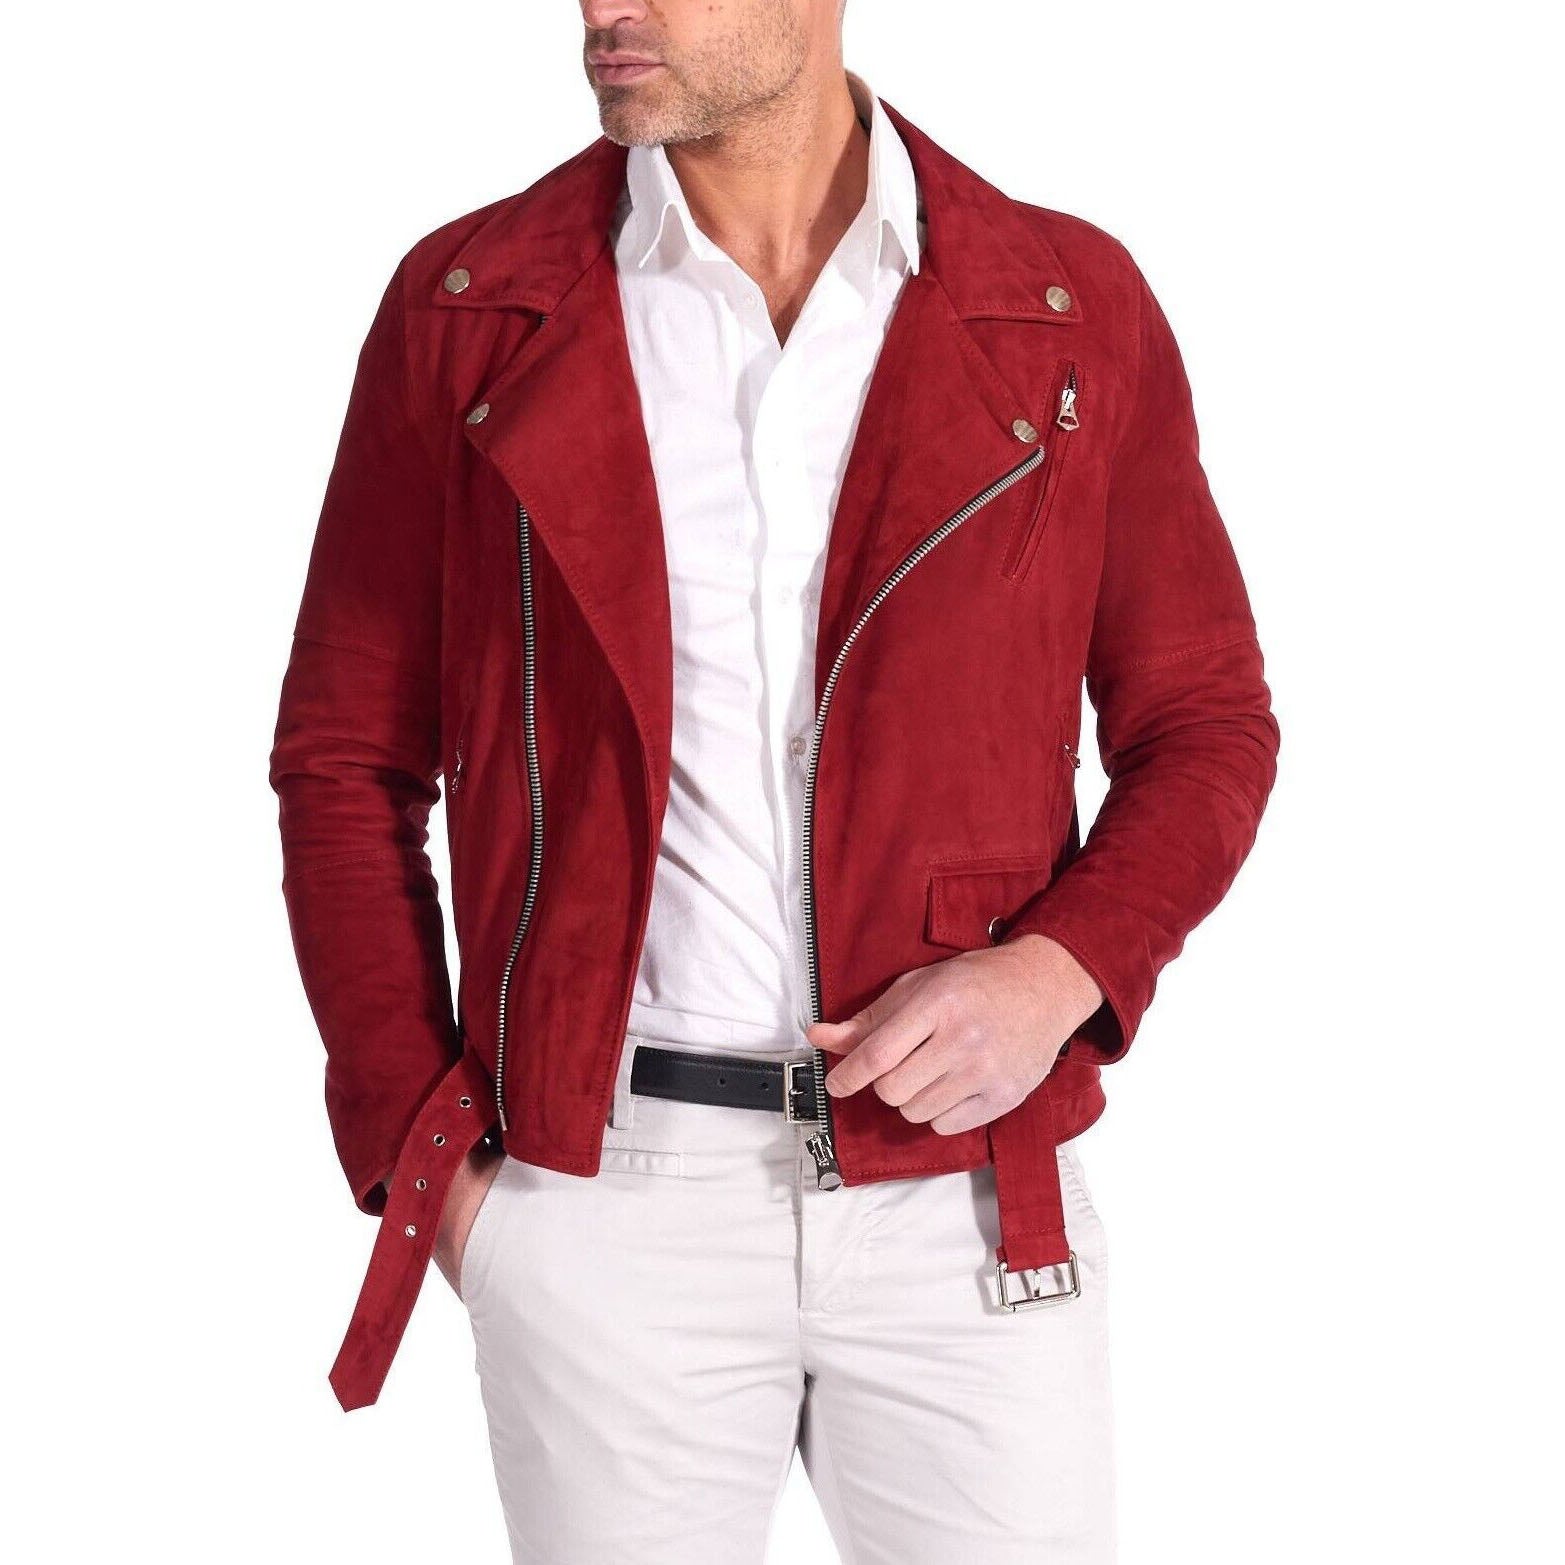 Men's Slim Fit Red Suede Leather Motorcycle Biker Jacket